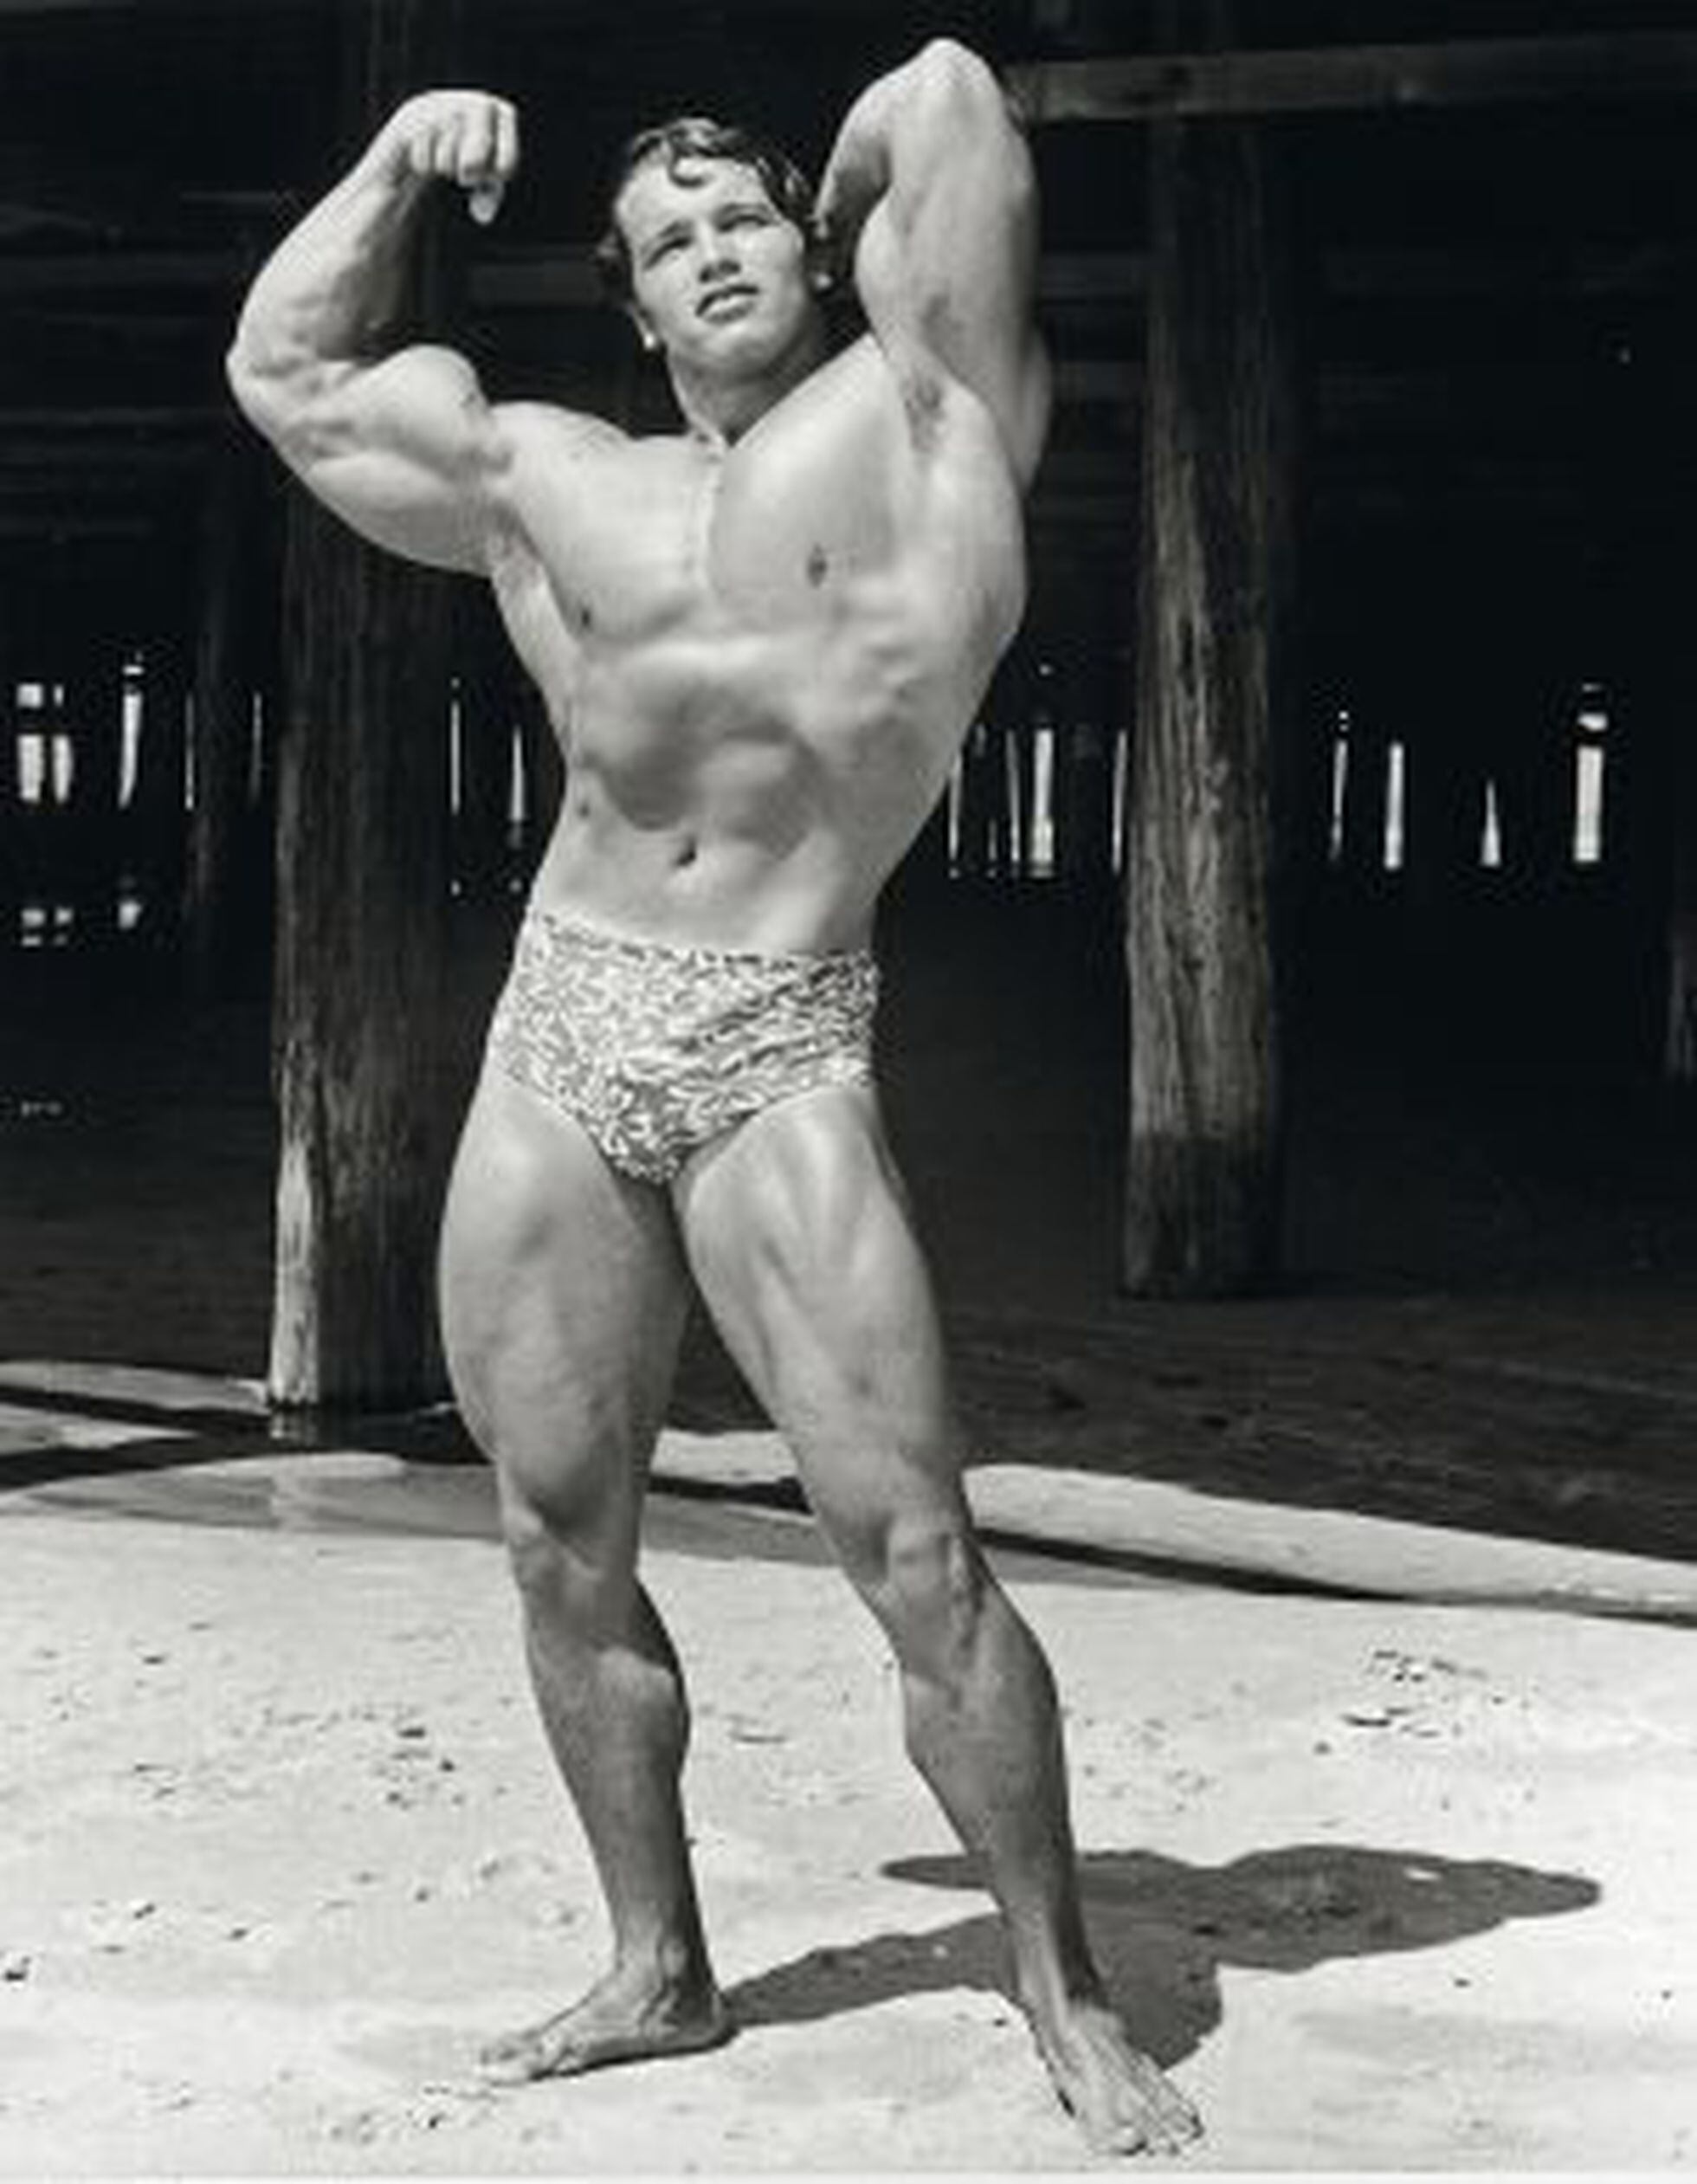 Terminado: Desafío Total, mi increíble historia de Arnold …